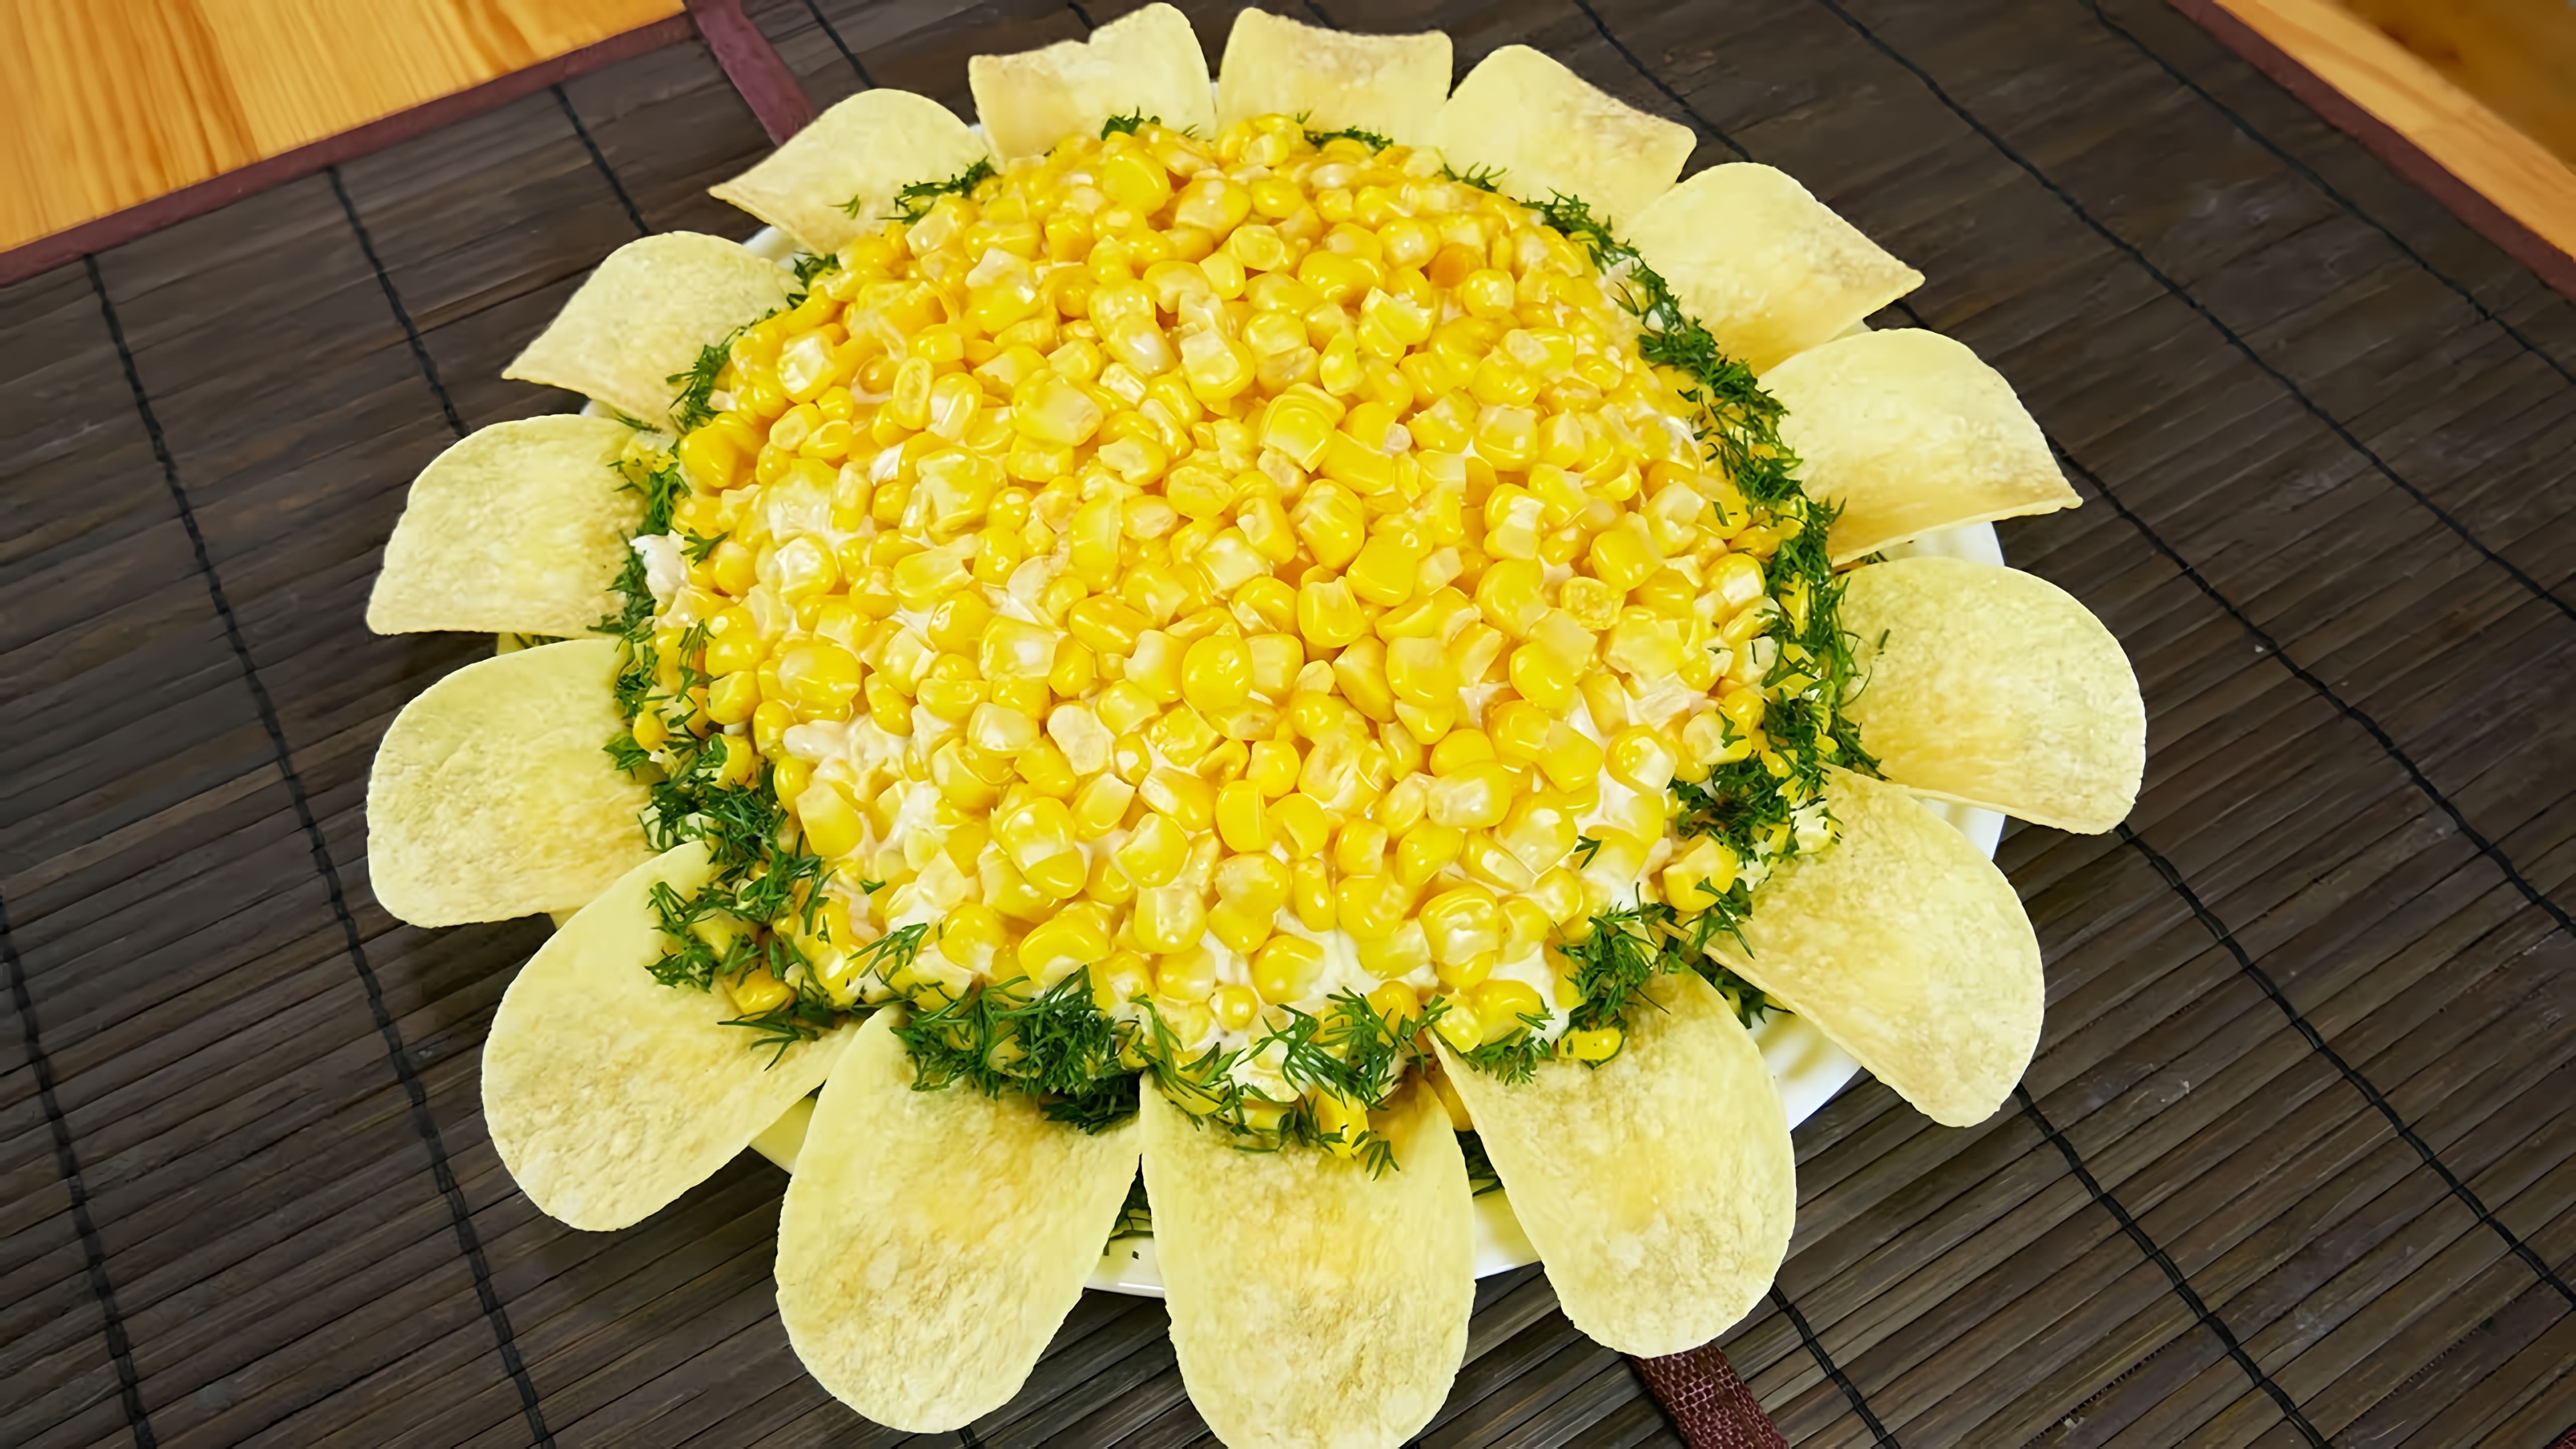 Салат "Подсолнух" - это слоеный салат, который идеально подходит для праздничного стола